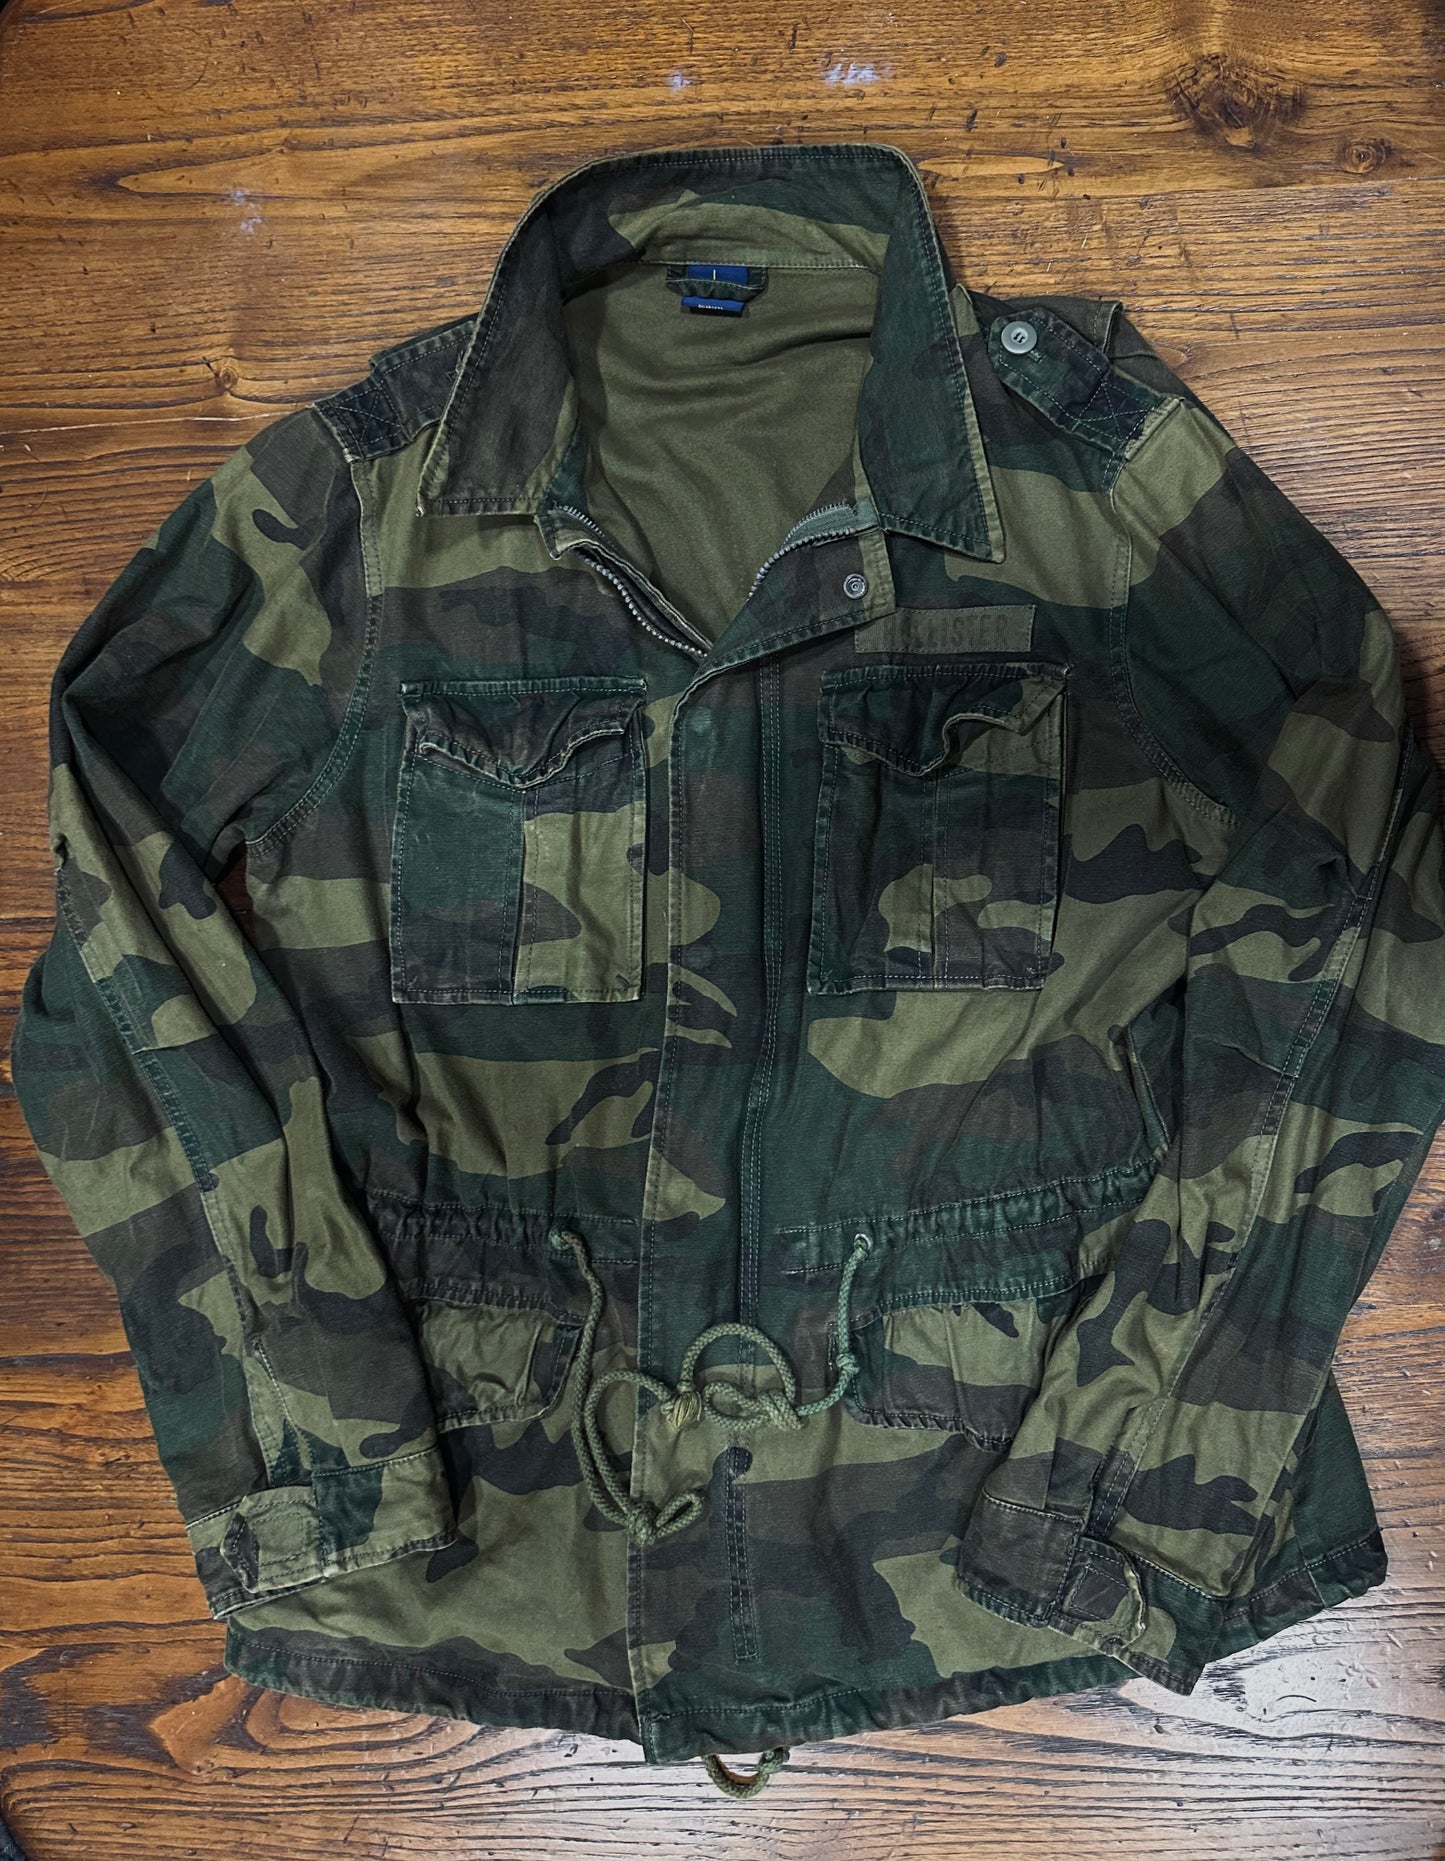 Field jacket hollister m-65